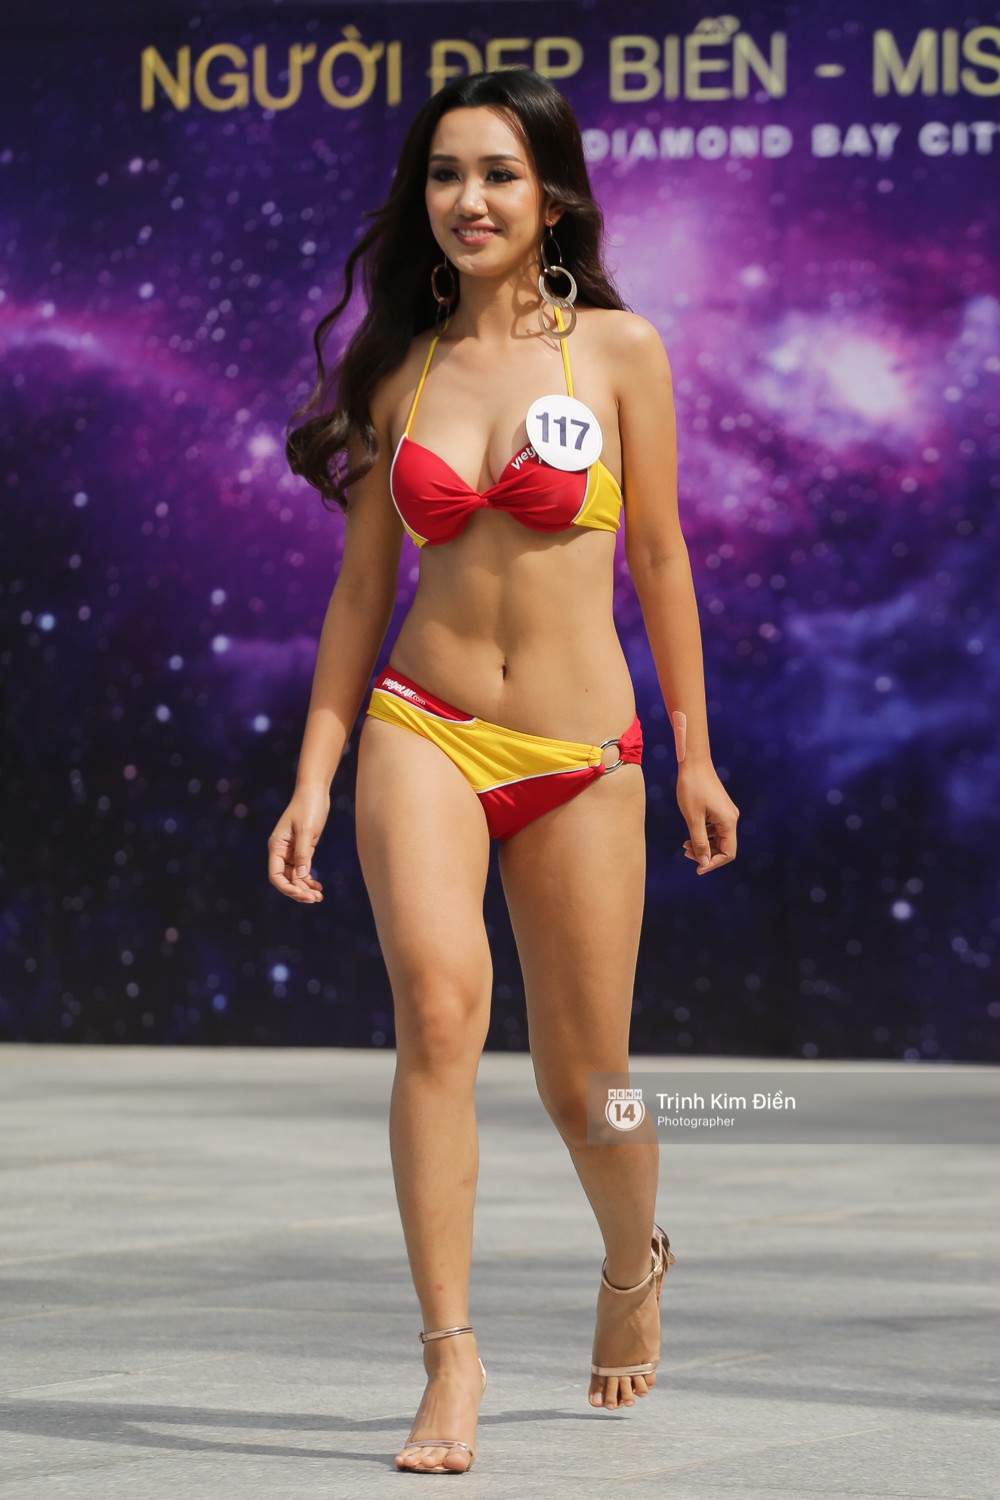 Dàn người đẹp Hoa hậu Hoàn vũ lộ đùi to, bụng mỡ khác xa ảnh photoshop trong phần thi trình diễn bikini - Ảnh 4.